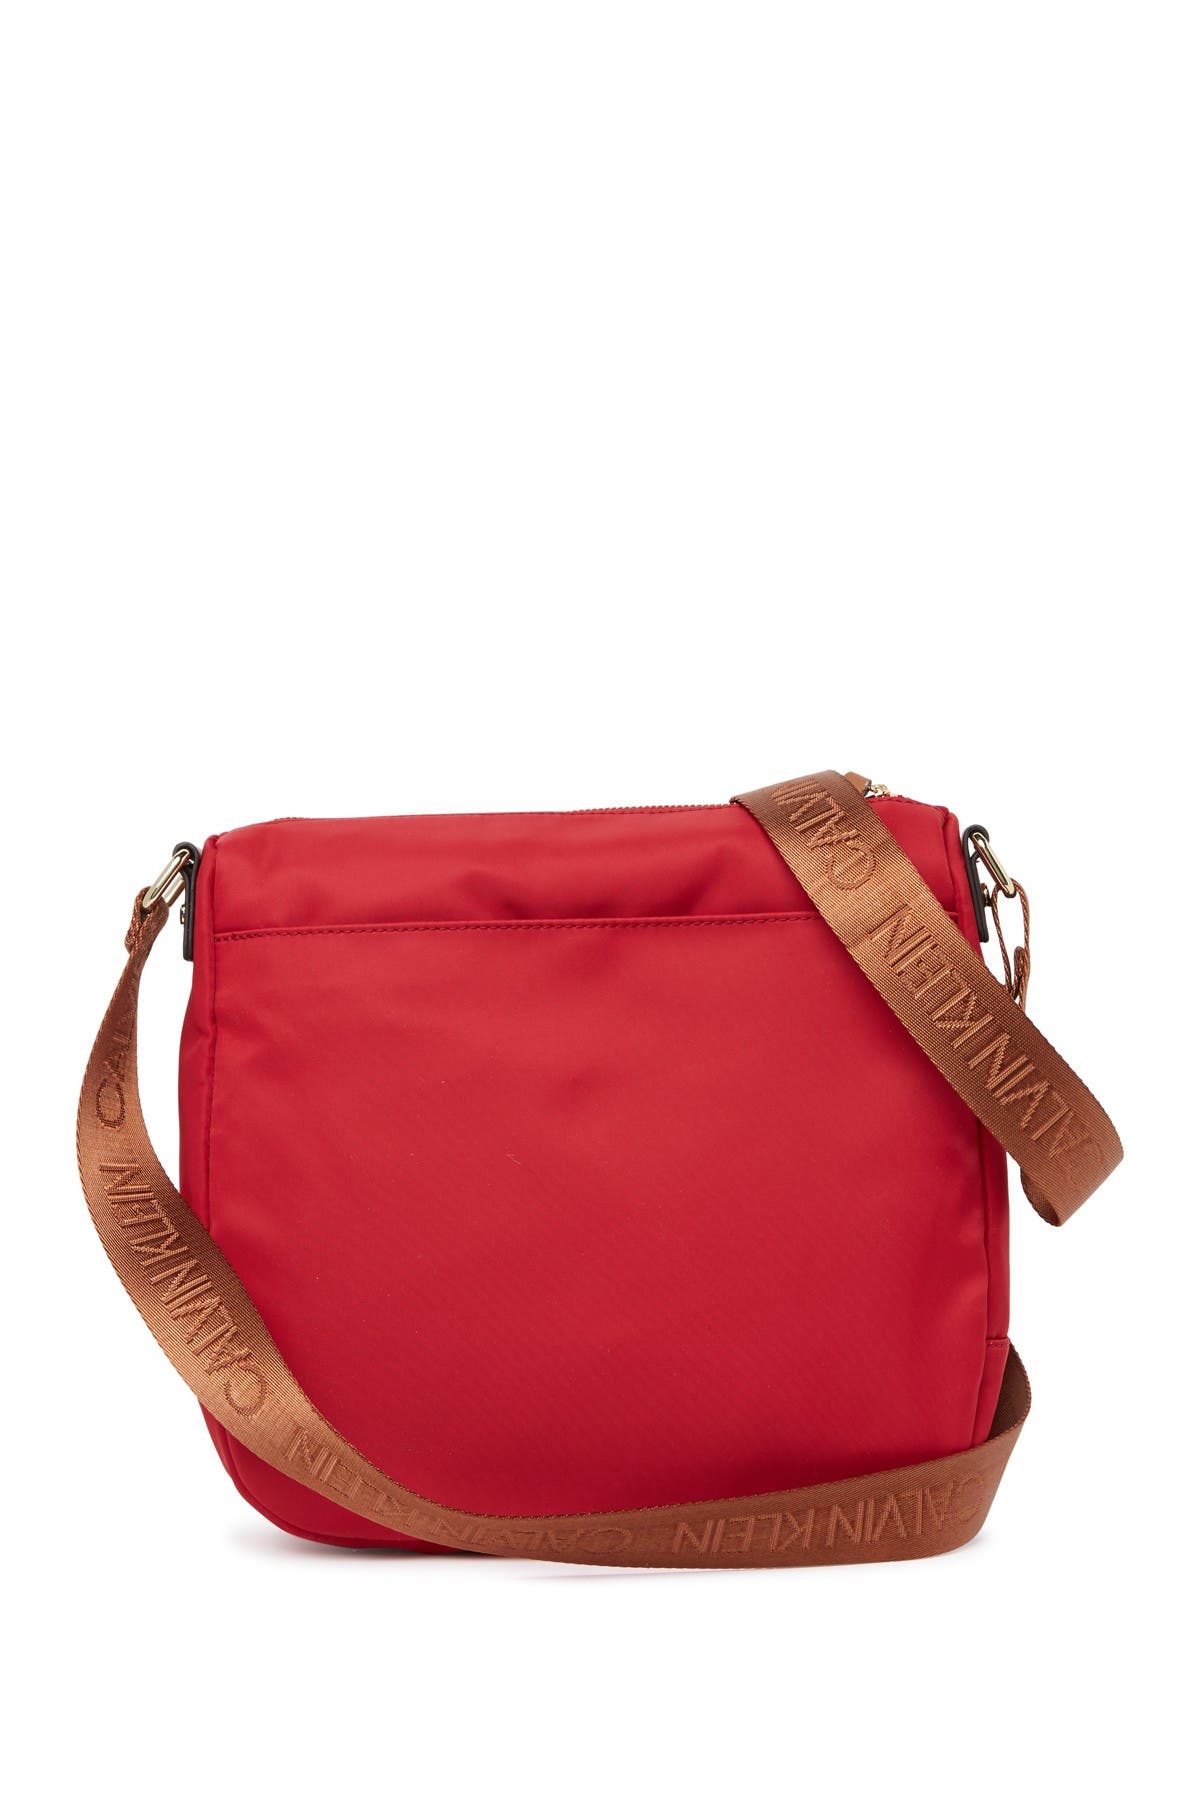 Calvin Klein Belfast Dressy Nylon Messenger Bag In Medium Red